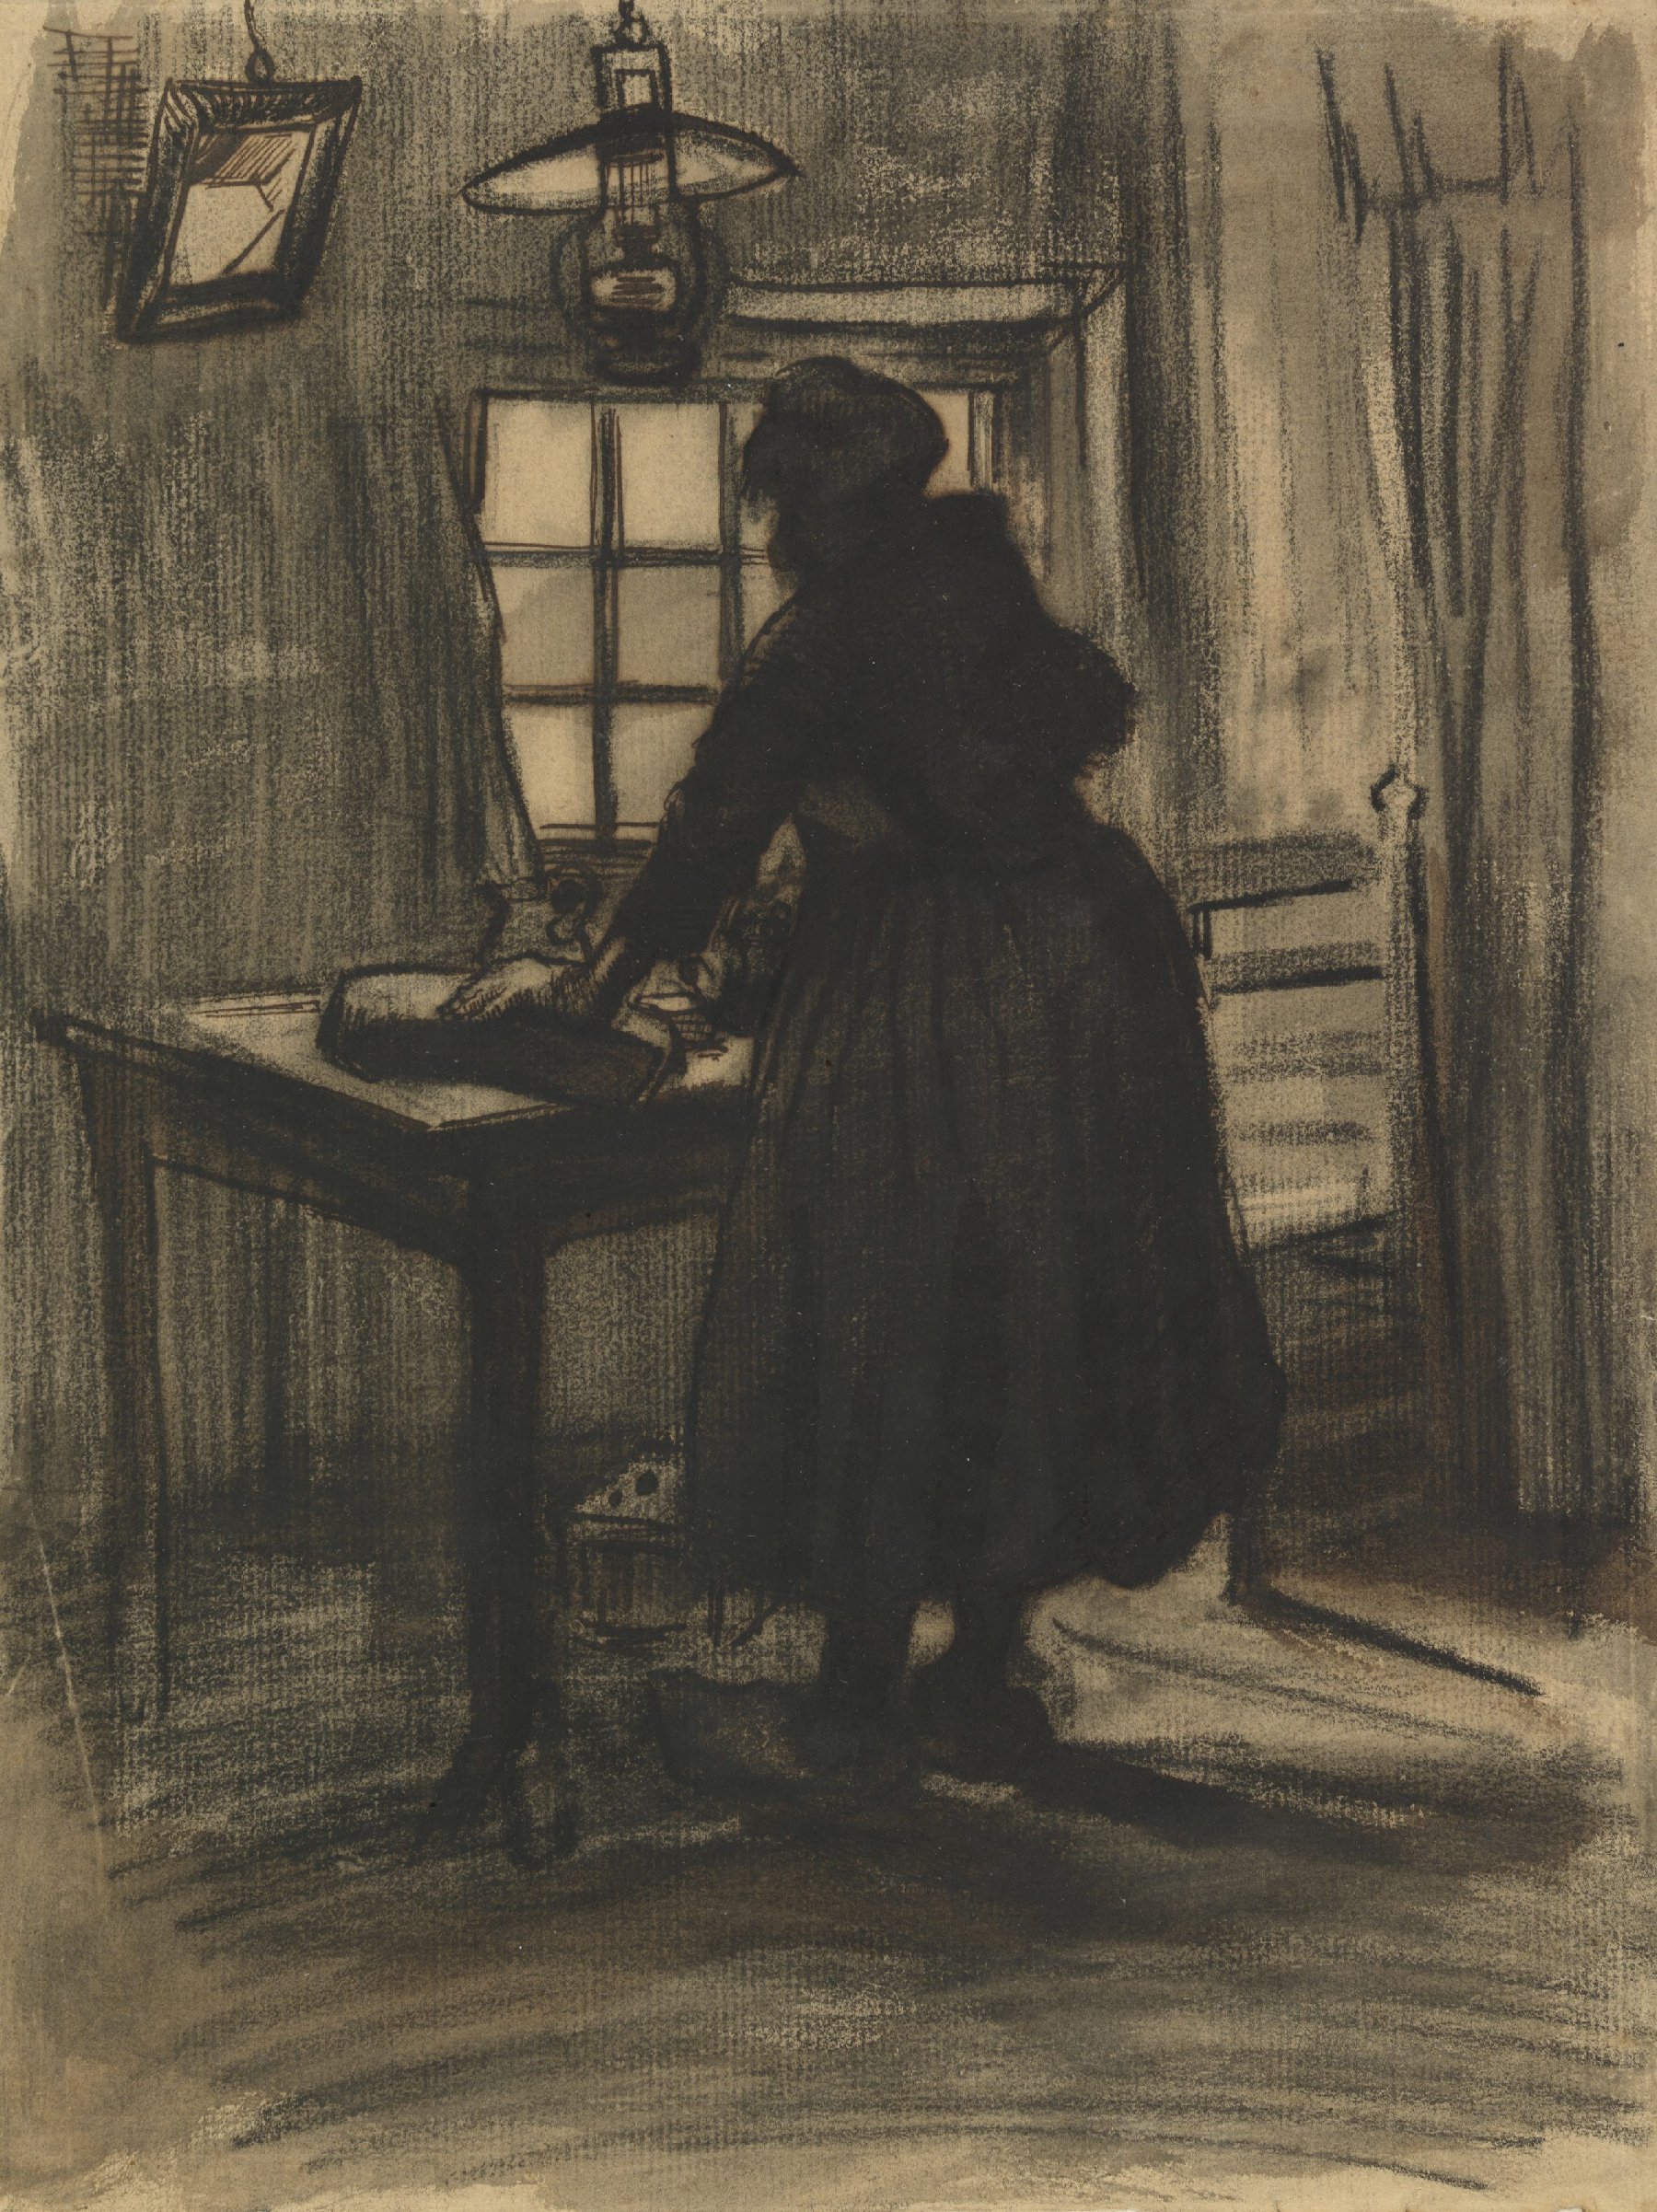 Broodsnijdende vrouw Vincent van Gogh (1853 - 1890), Nuenen, maart-april 1885